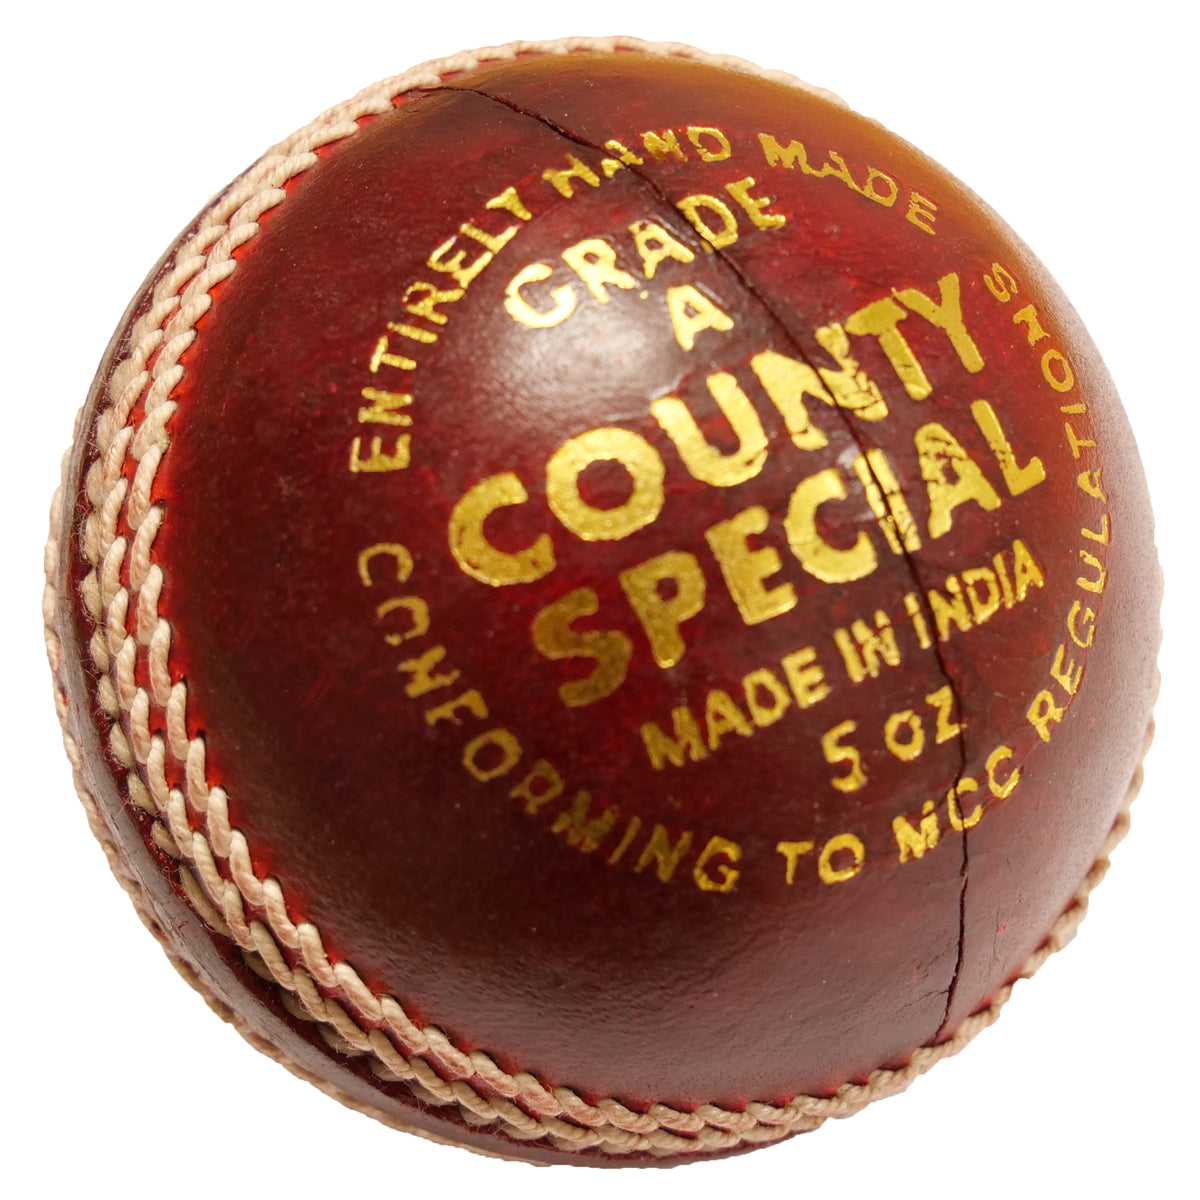 Salamander County Special Cricket Ball Box of 6